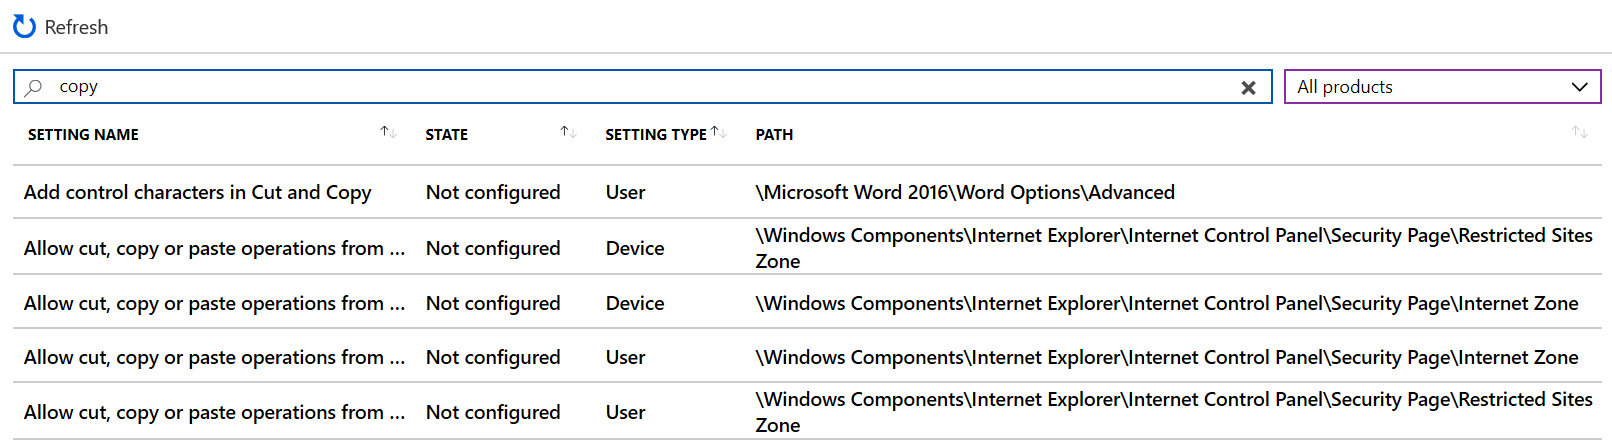 Search do kopiowania, aby wyświetlić wszystkie ustawienia urządzenia w szablonach administracyjnych w centrum administracyjnym Microsoft Intune i Intune.